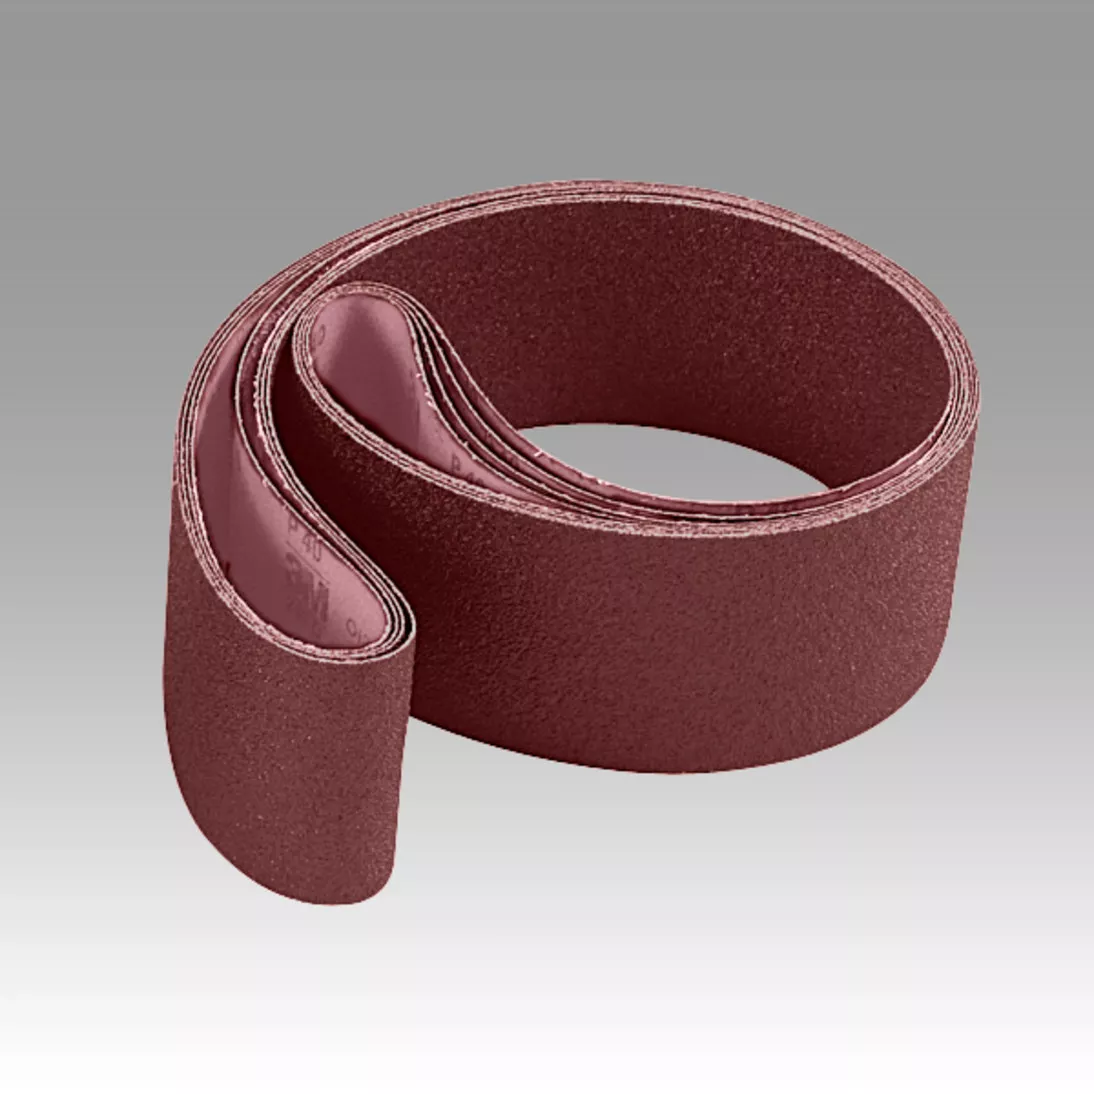 Scotch-Brite™ Surface Conditioning Low Stretch Belt, SC-BL, A/O Medium,
3-1/2 in x 15-1/2 in, 10 ea/Case